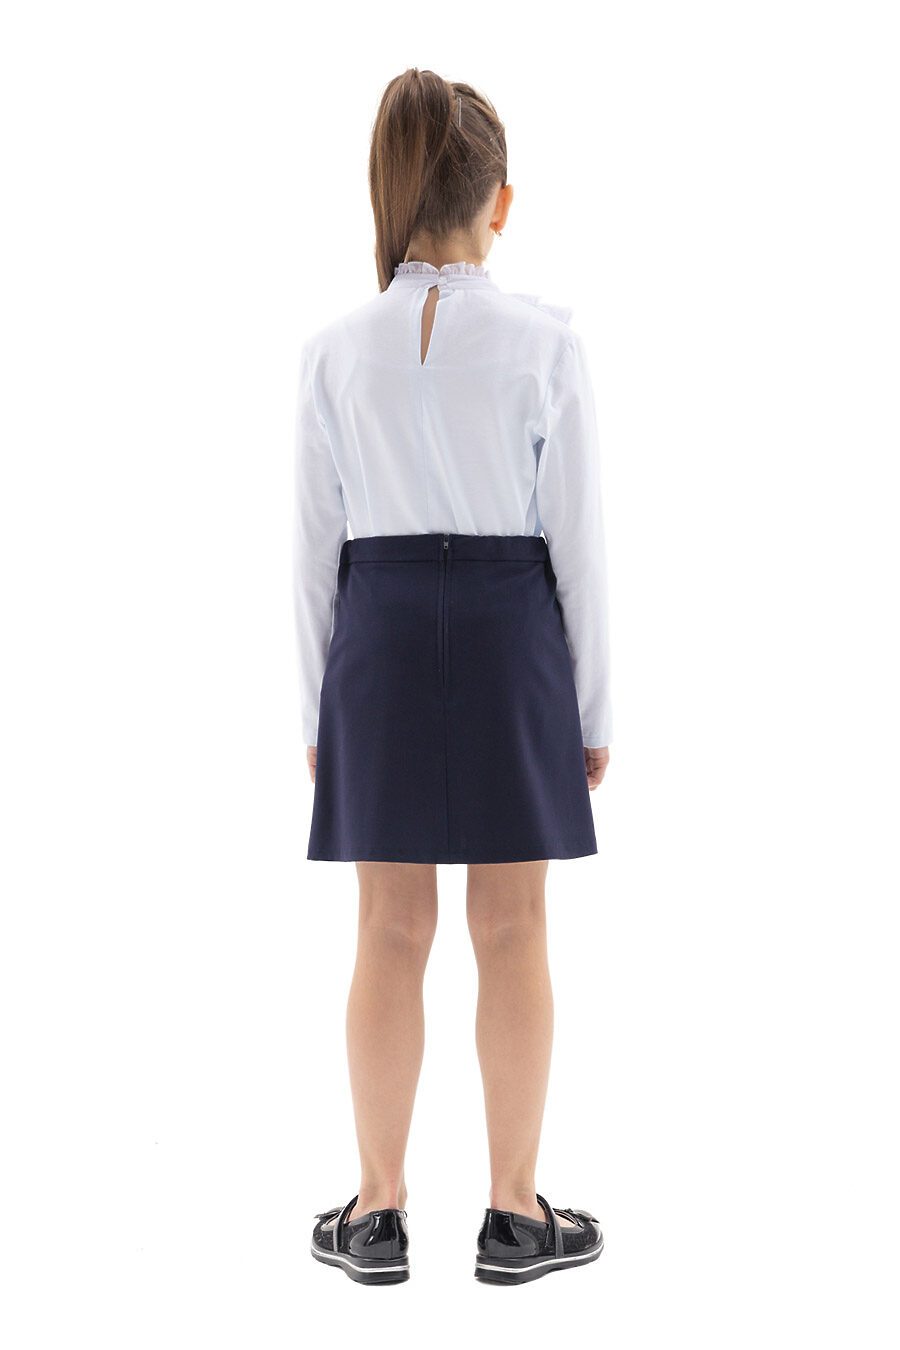 Блуза КАРАМЕЛЛИ (784931), купить в Moyo.moda